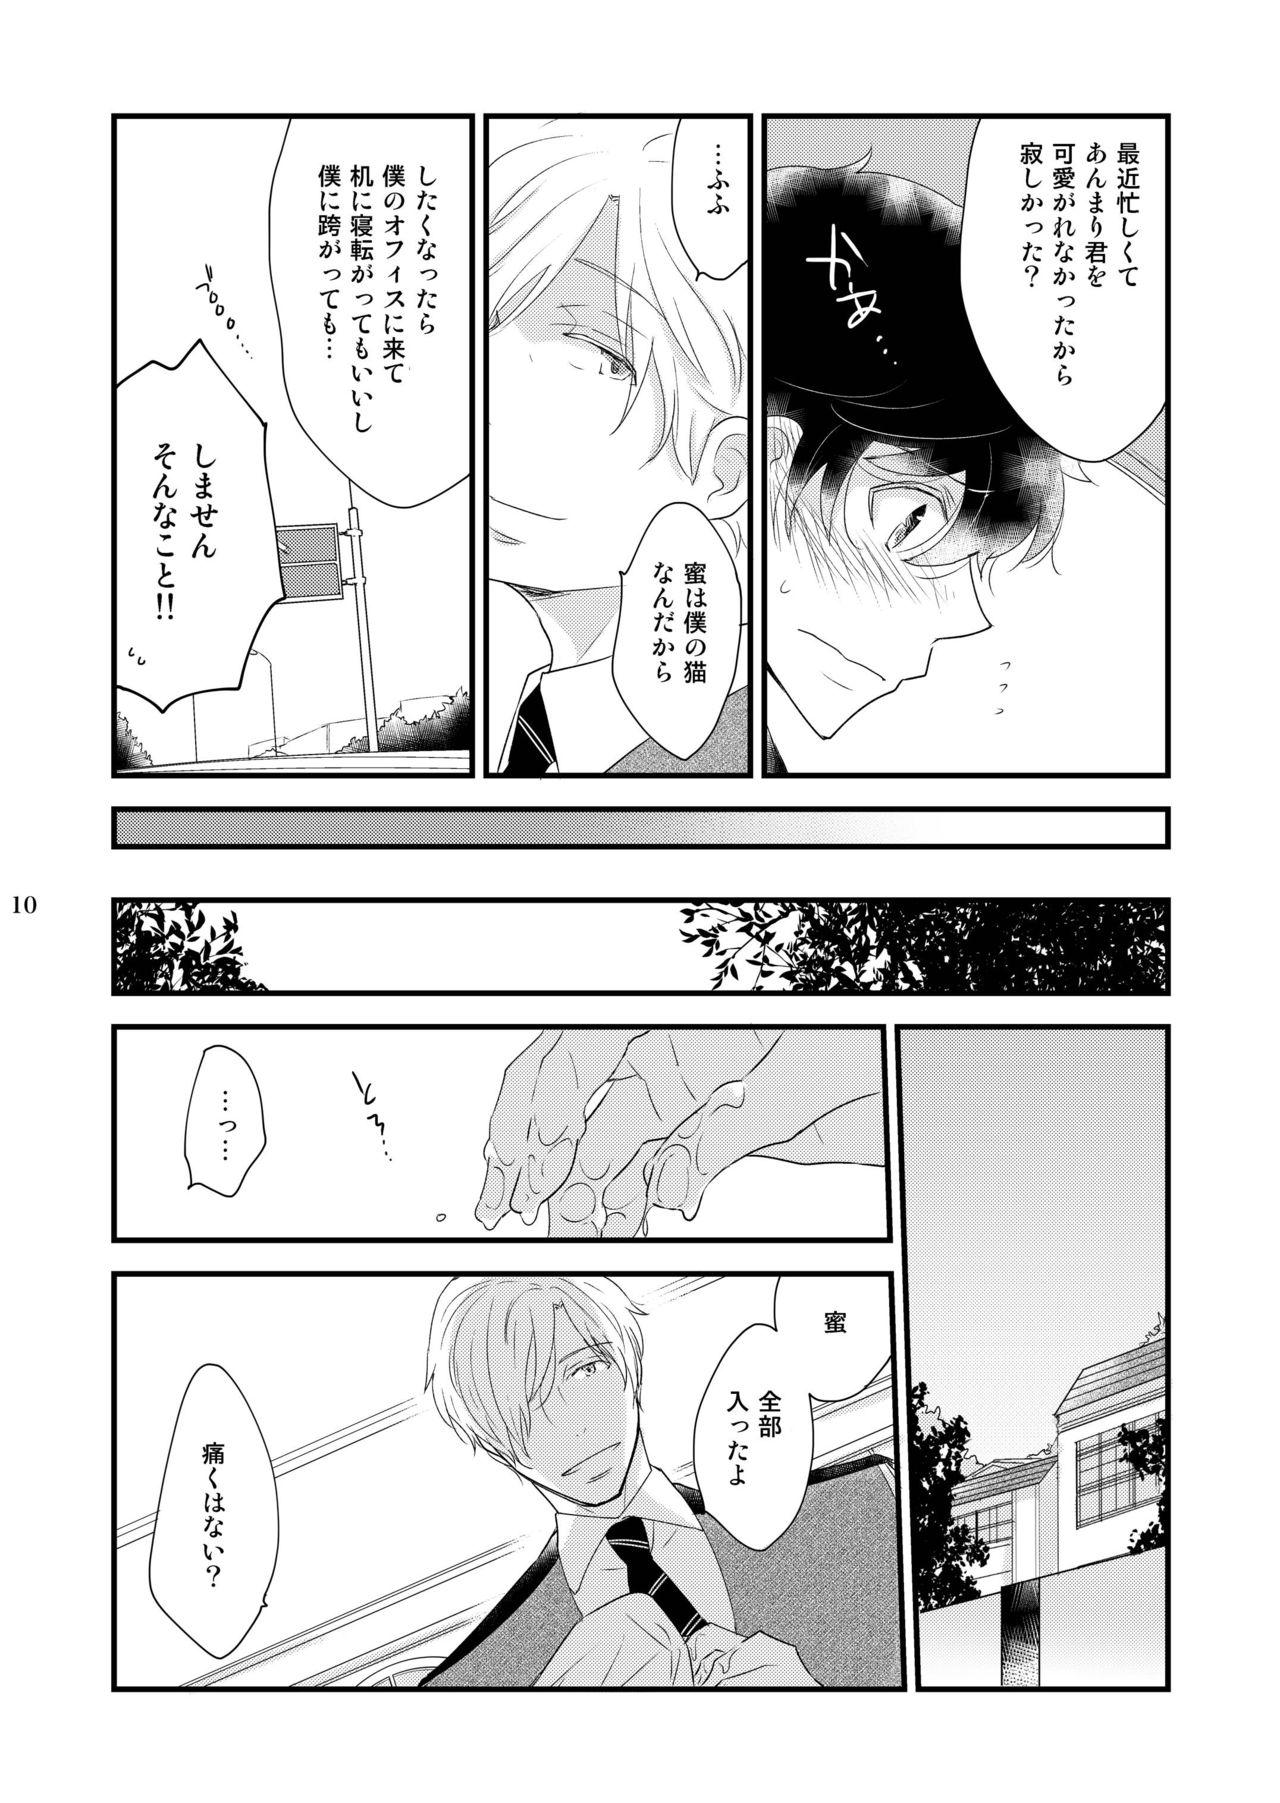 Mediumtits Utsutsu no Neko Screaming - Page 10